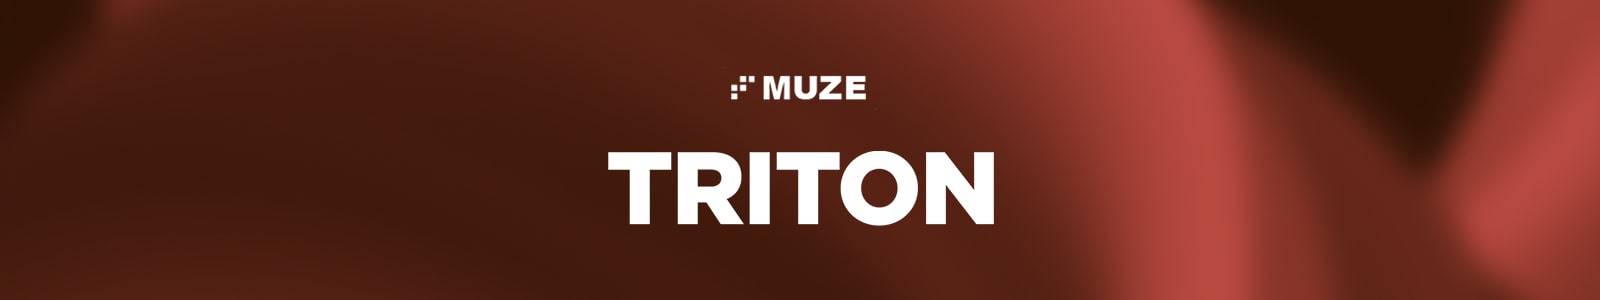 PA Triton by Muze